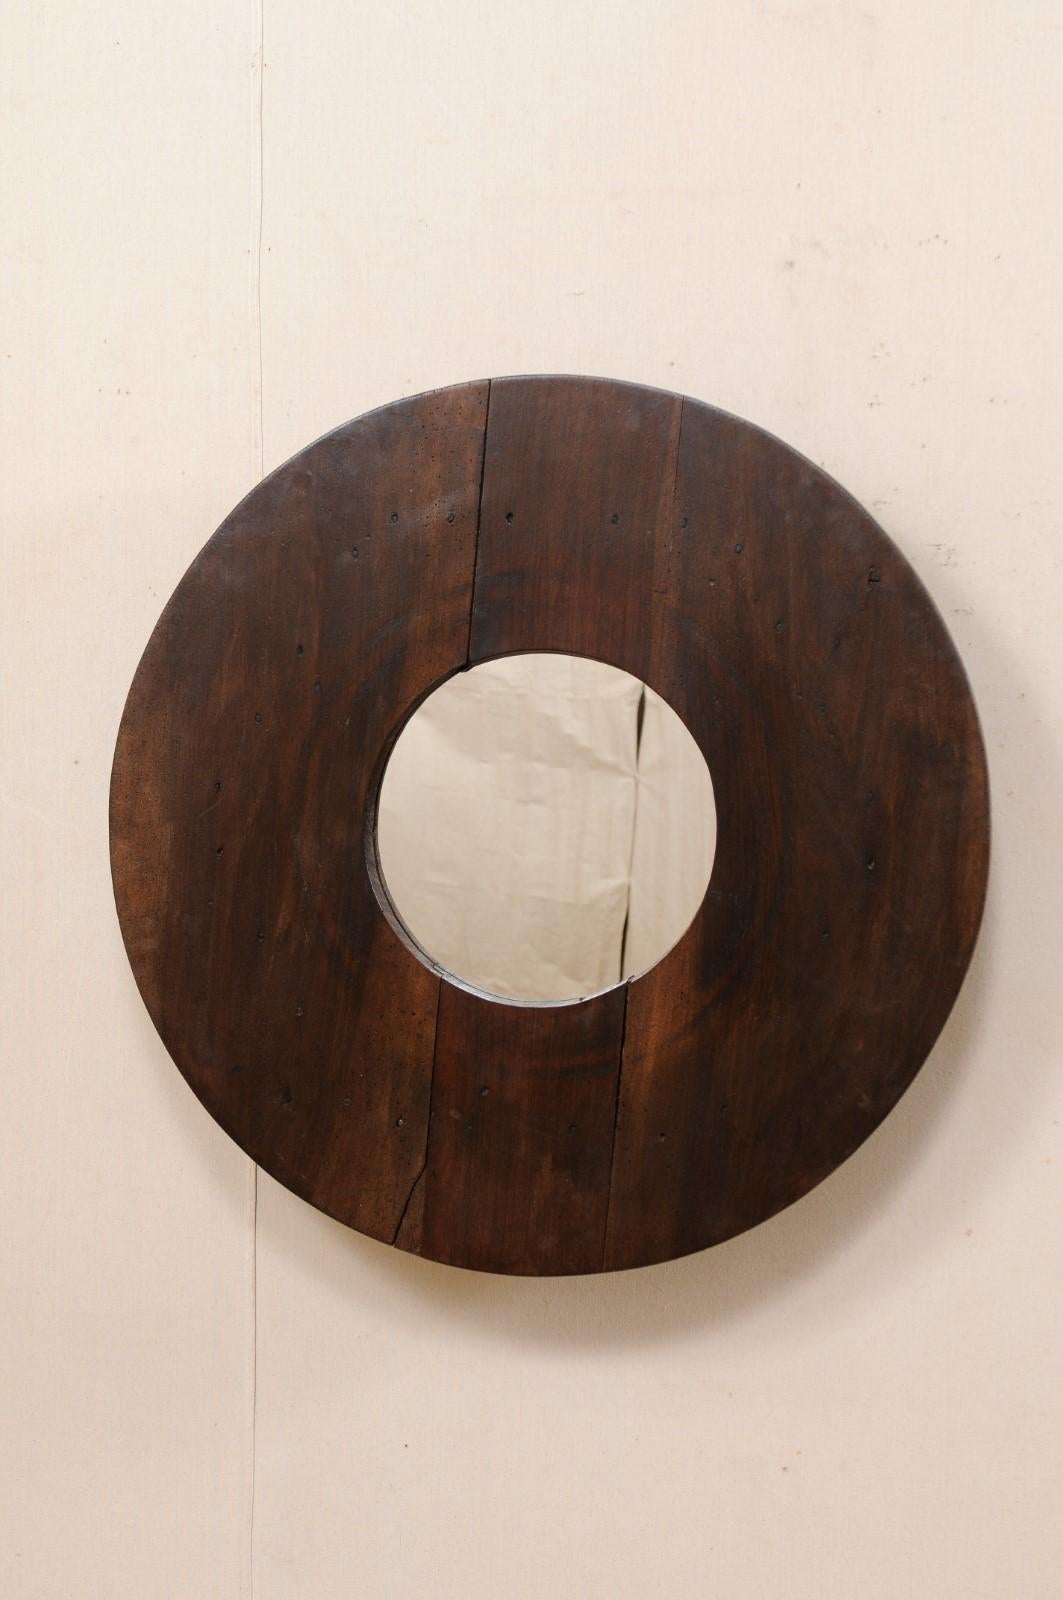 Ce miroir personnalisé a été recyclé de manière créative en utilisant un vieil ustensile de cuisine en bois d'Afrique du Nord pour l'entourer, avec un nouveau verre réfléchissant en son centre. Ce miroir présente un miroir de forme circulaire, dans